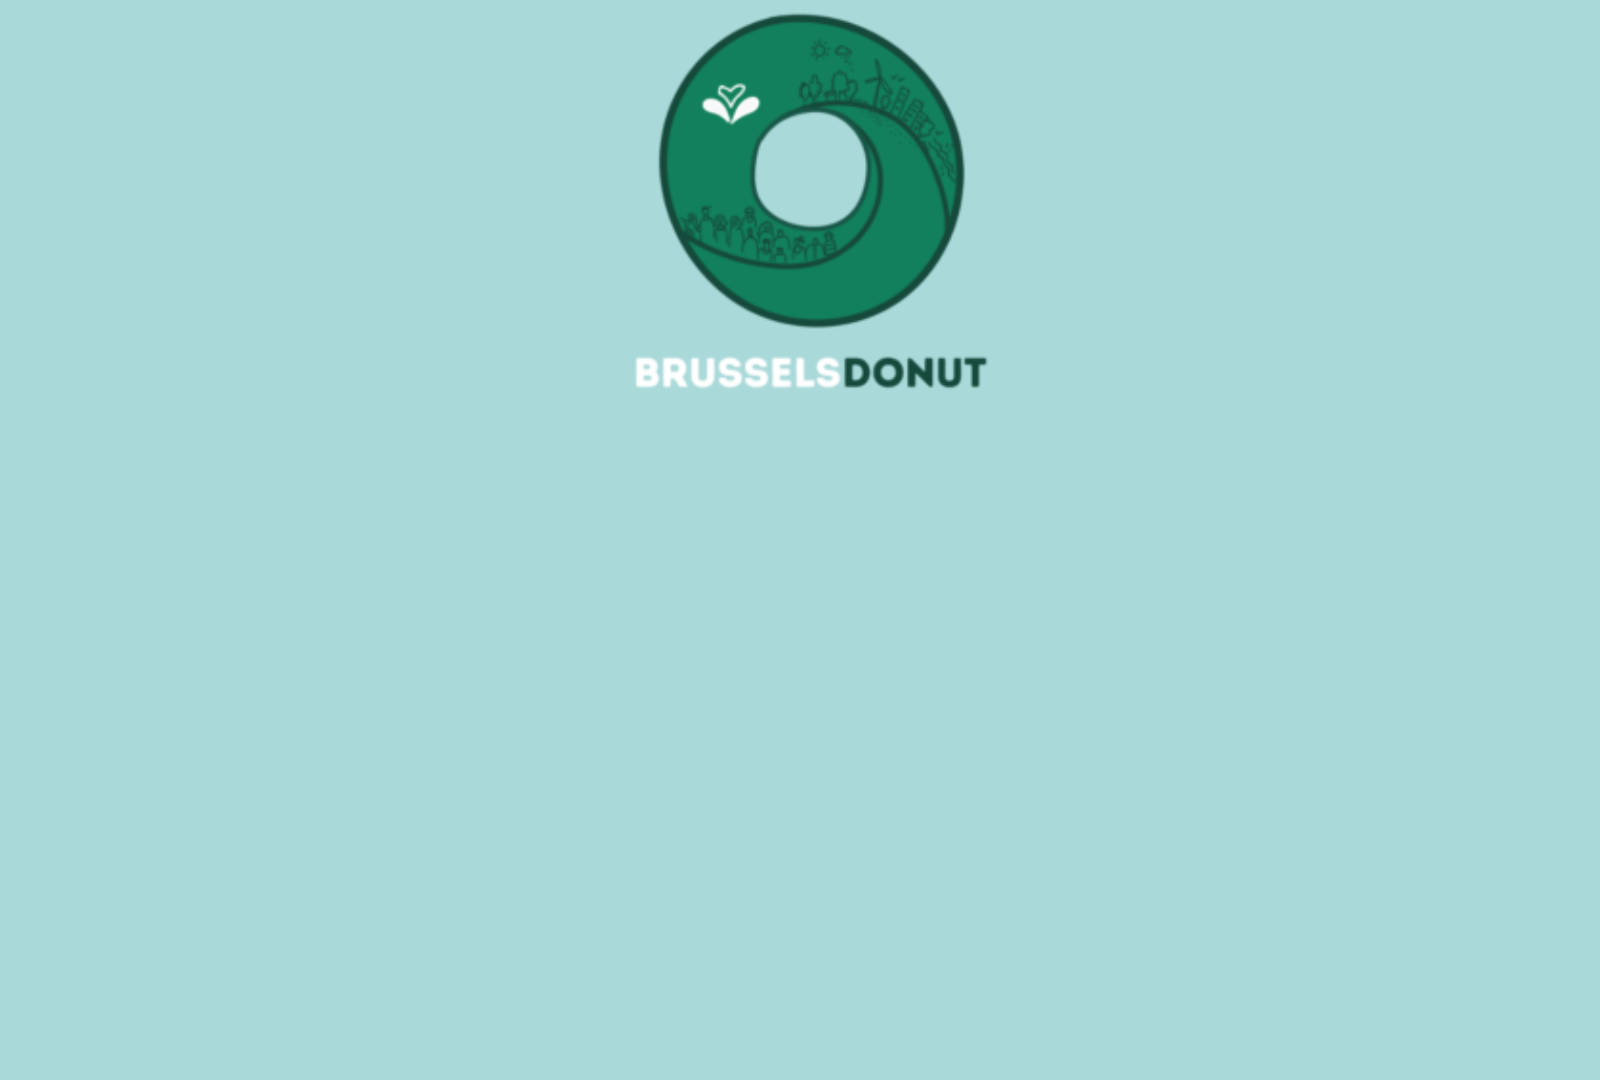 La Région bruxelloise mise sur la théorie du Donut pour transformer son économie